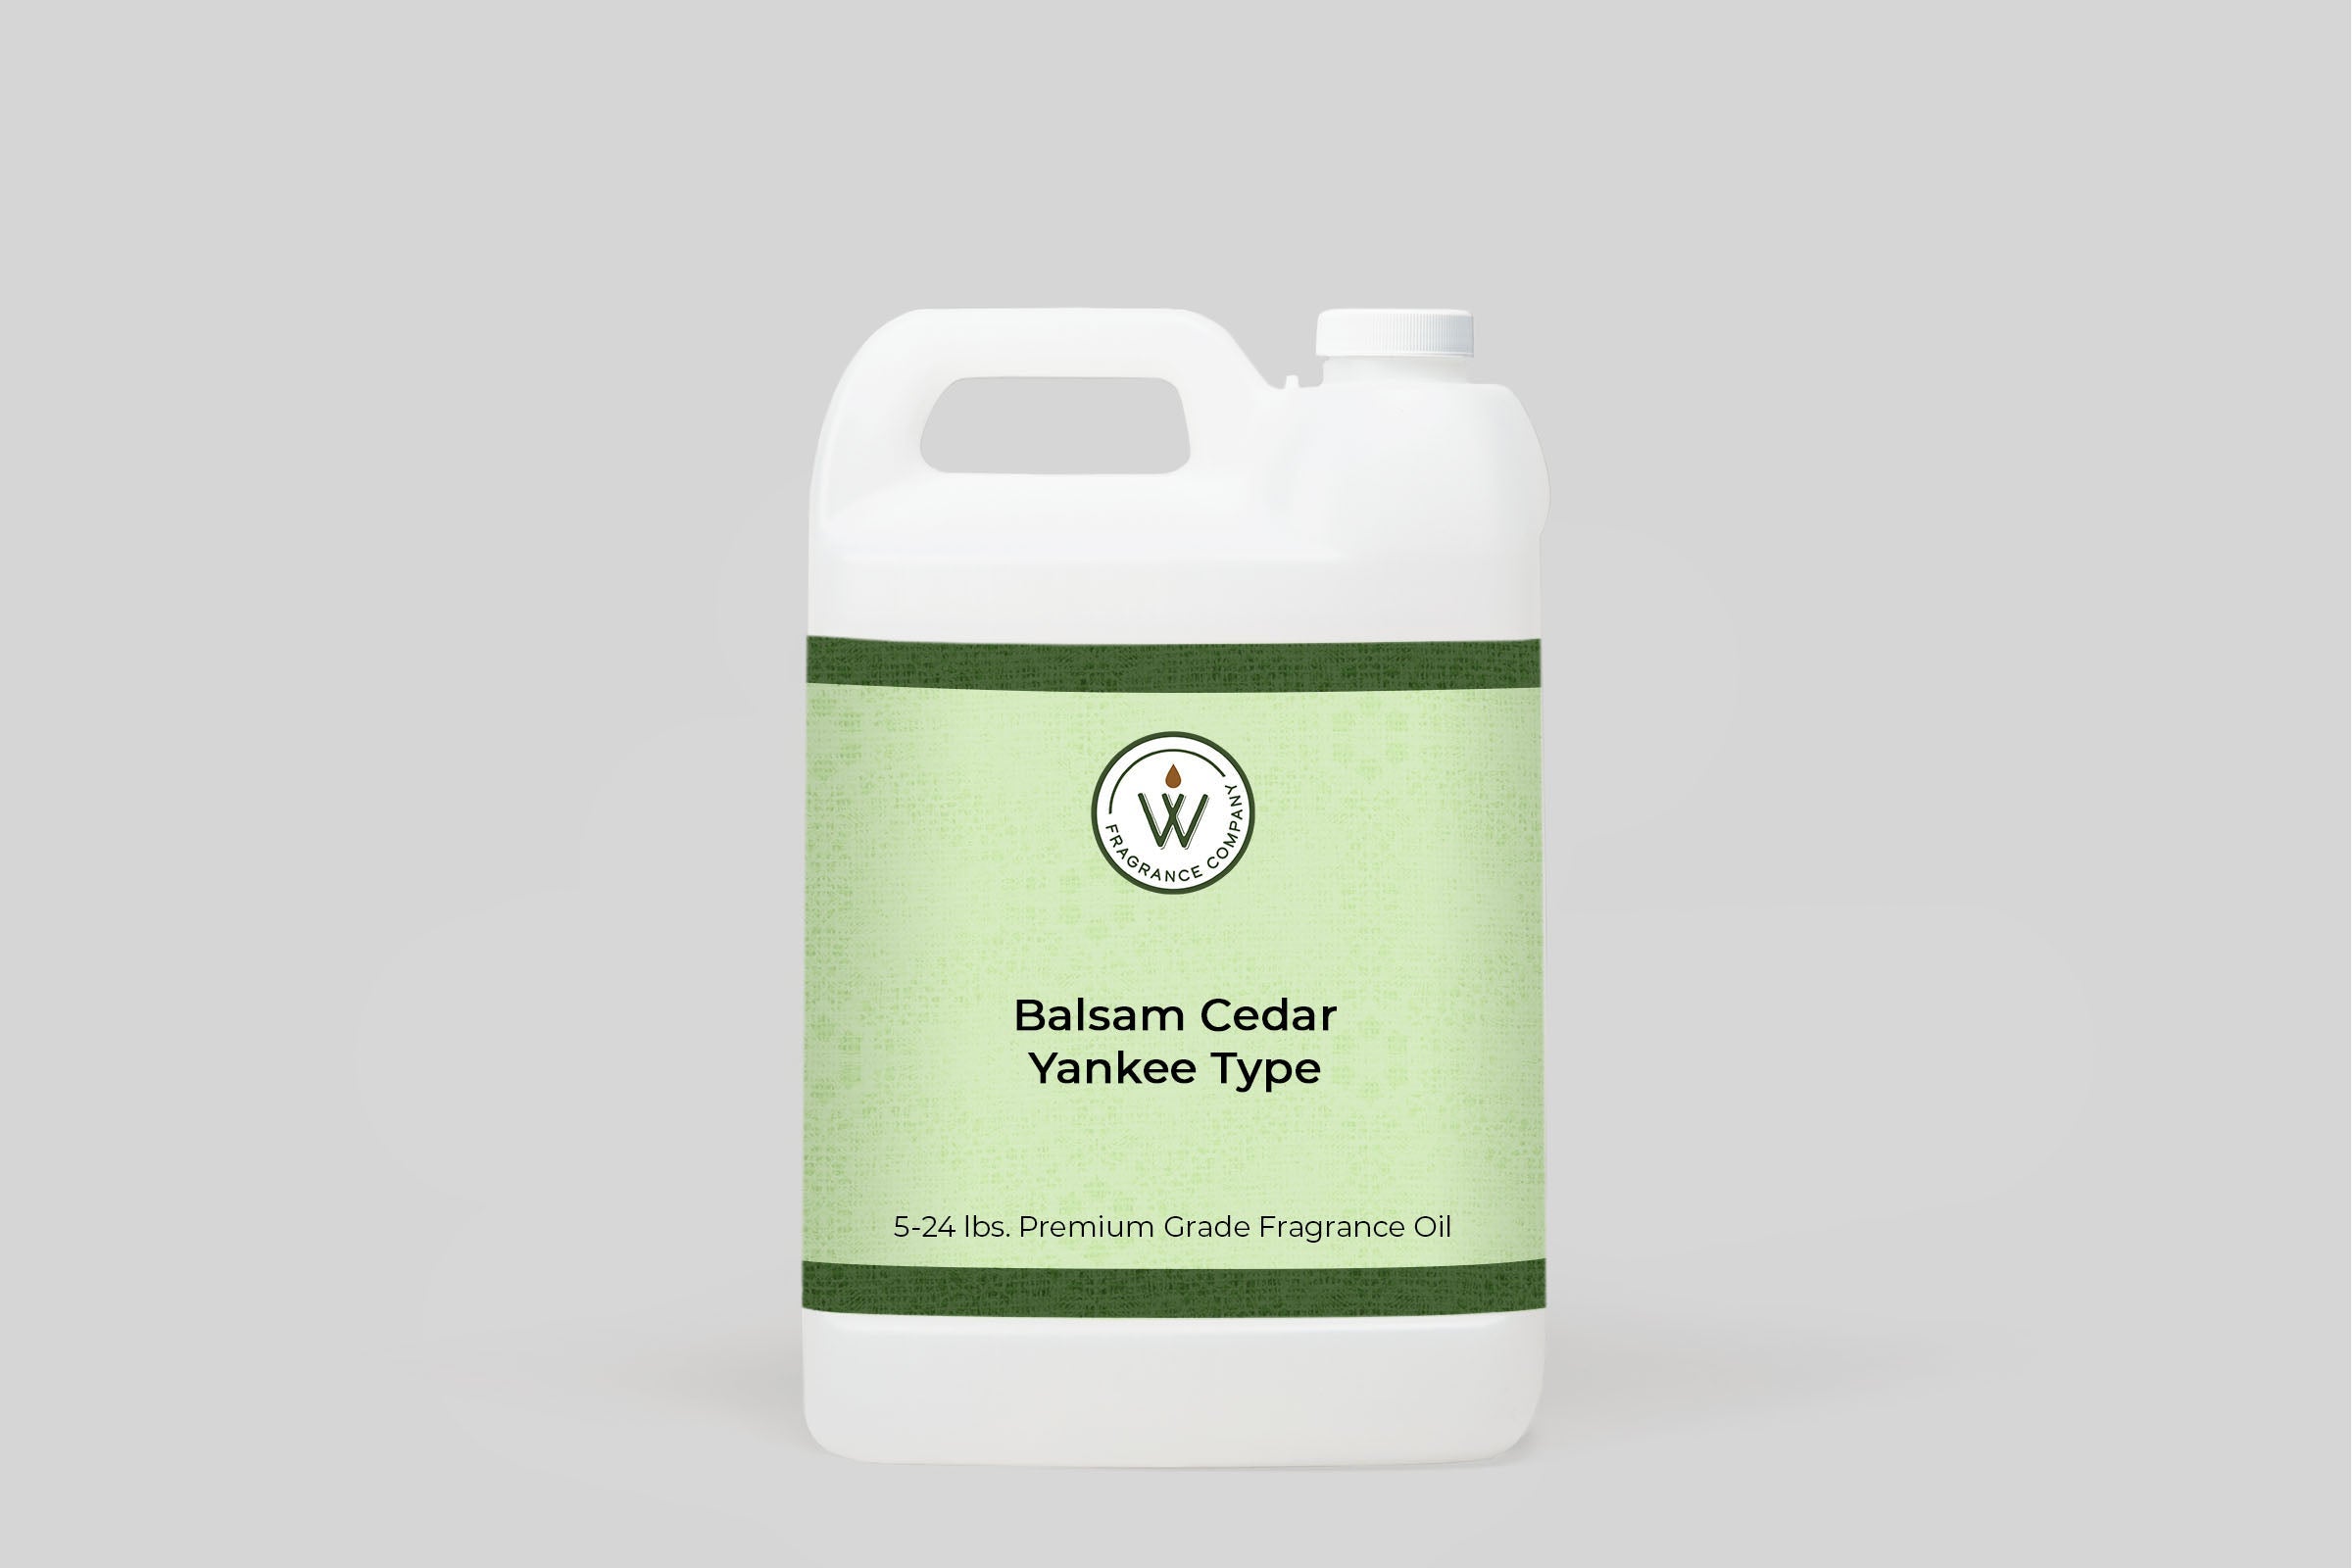 Balsam Cedar Yankee Type Fragrance Oil